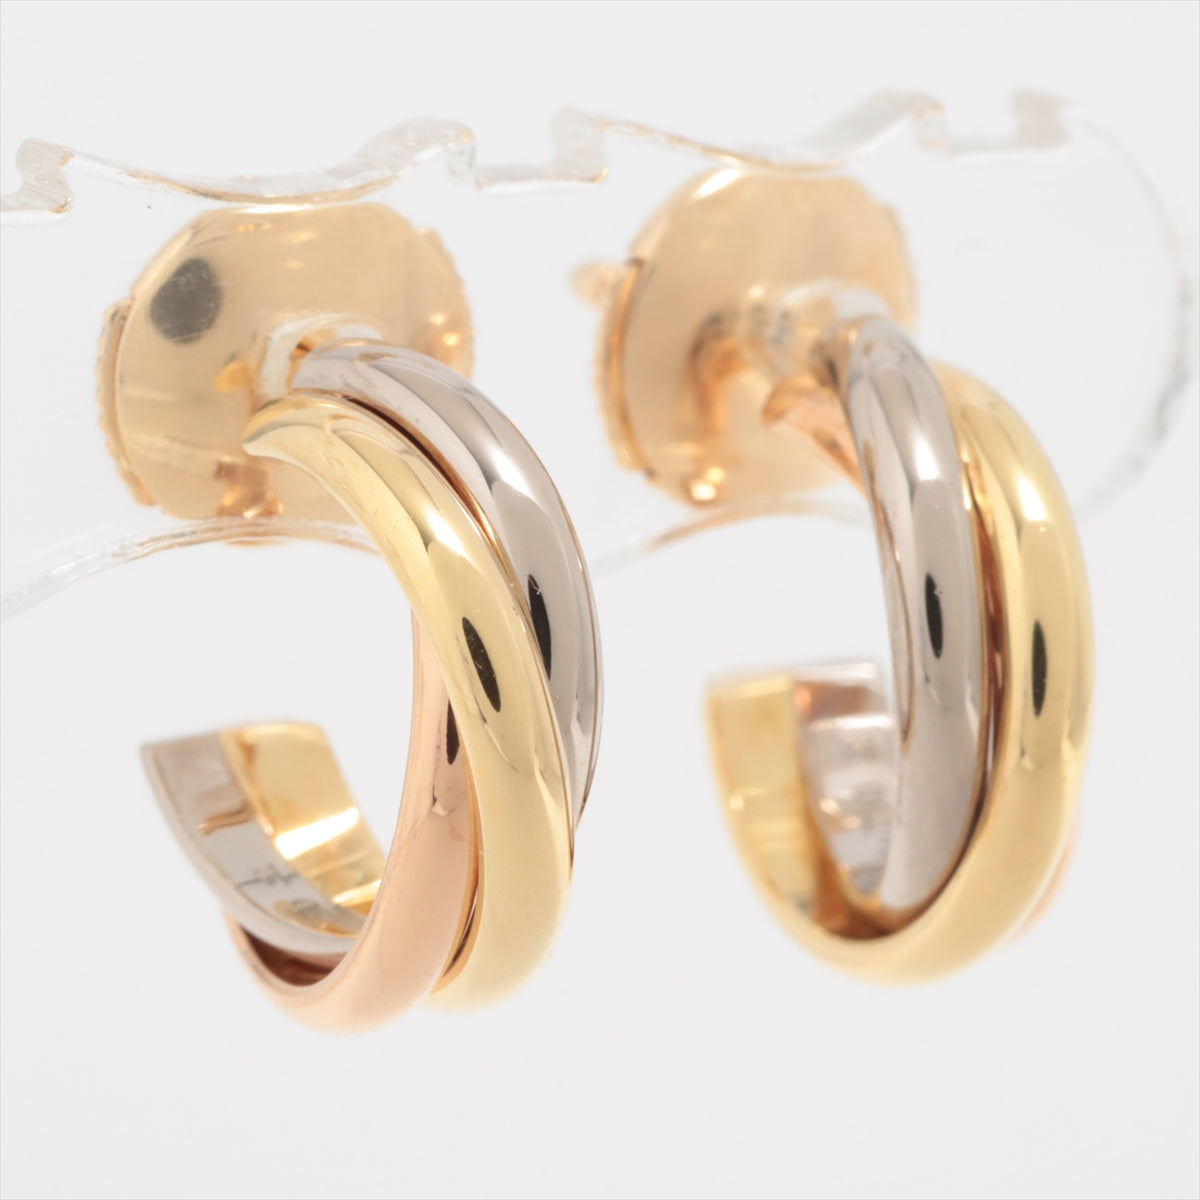 Cartier Trinity Piercing jewelry 750(YG×PG×WG) 4.6g CRB8017100